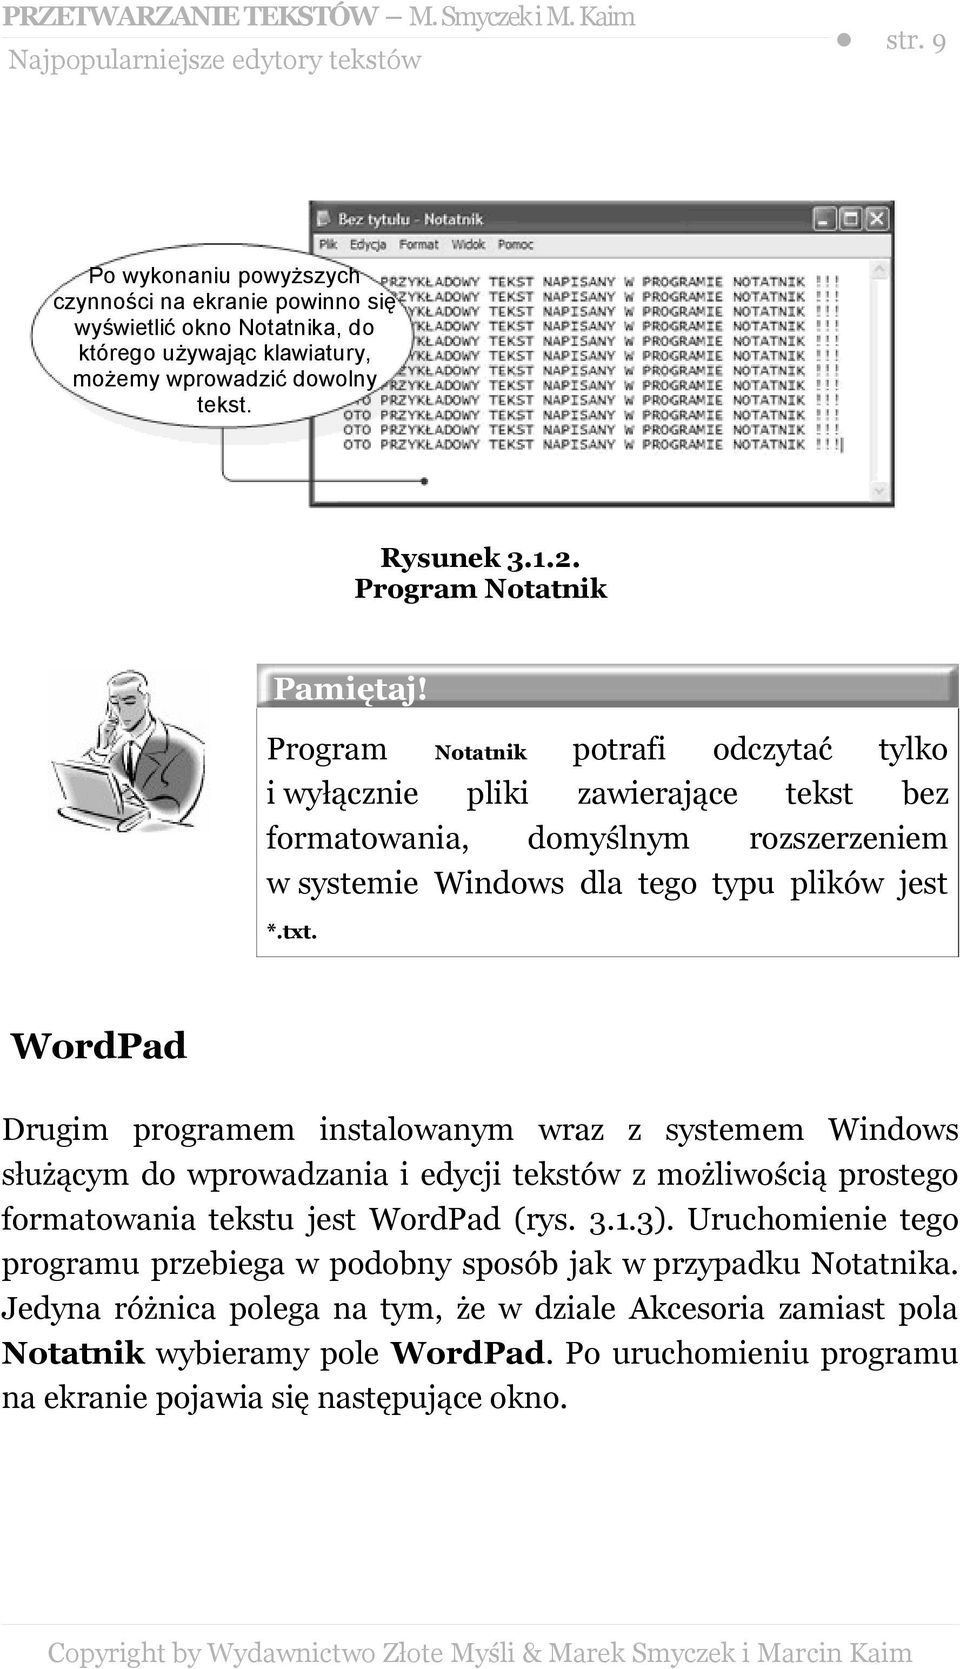 txt. WordPad Drugim programem instalowanym wraz z systemem Windows służącym do wprowadzania i edycji tekstów z możliwością prostego formatowania tekstu jest WordPad (rys. 3.1.3).